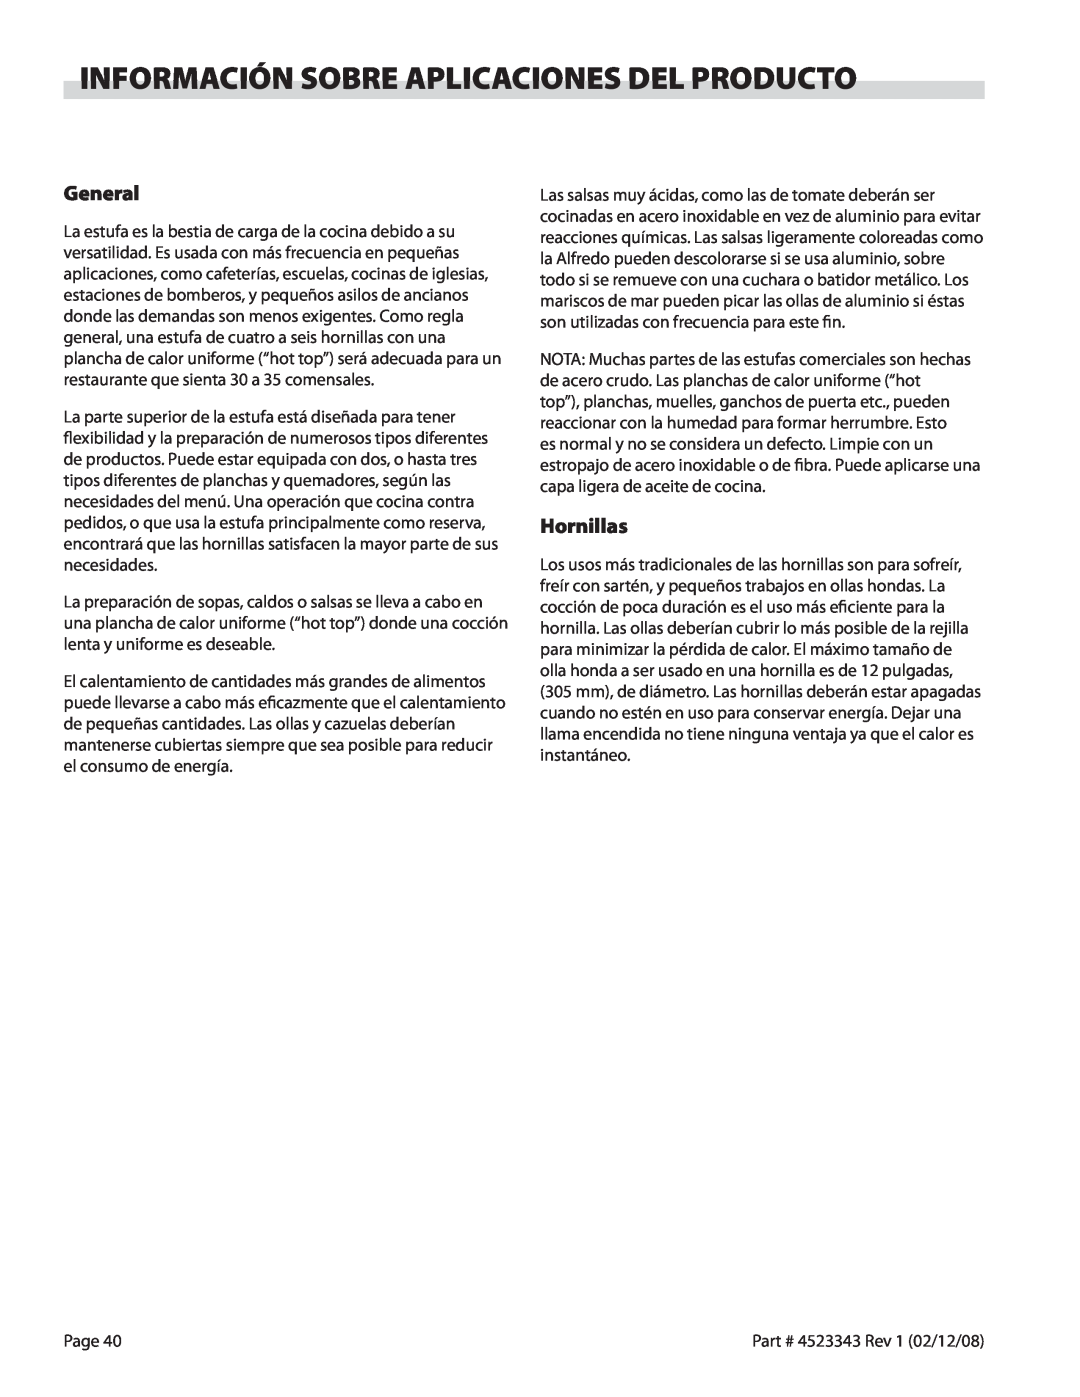 Sunfire X Series operation manual Información Sobre Aplicaciones Del Producto, General, Hornillas 